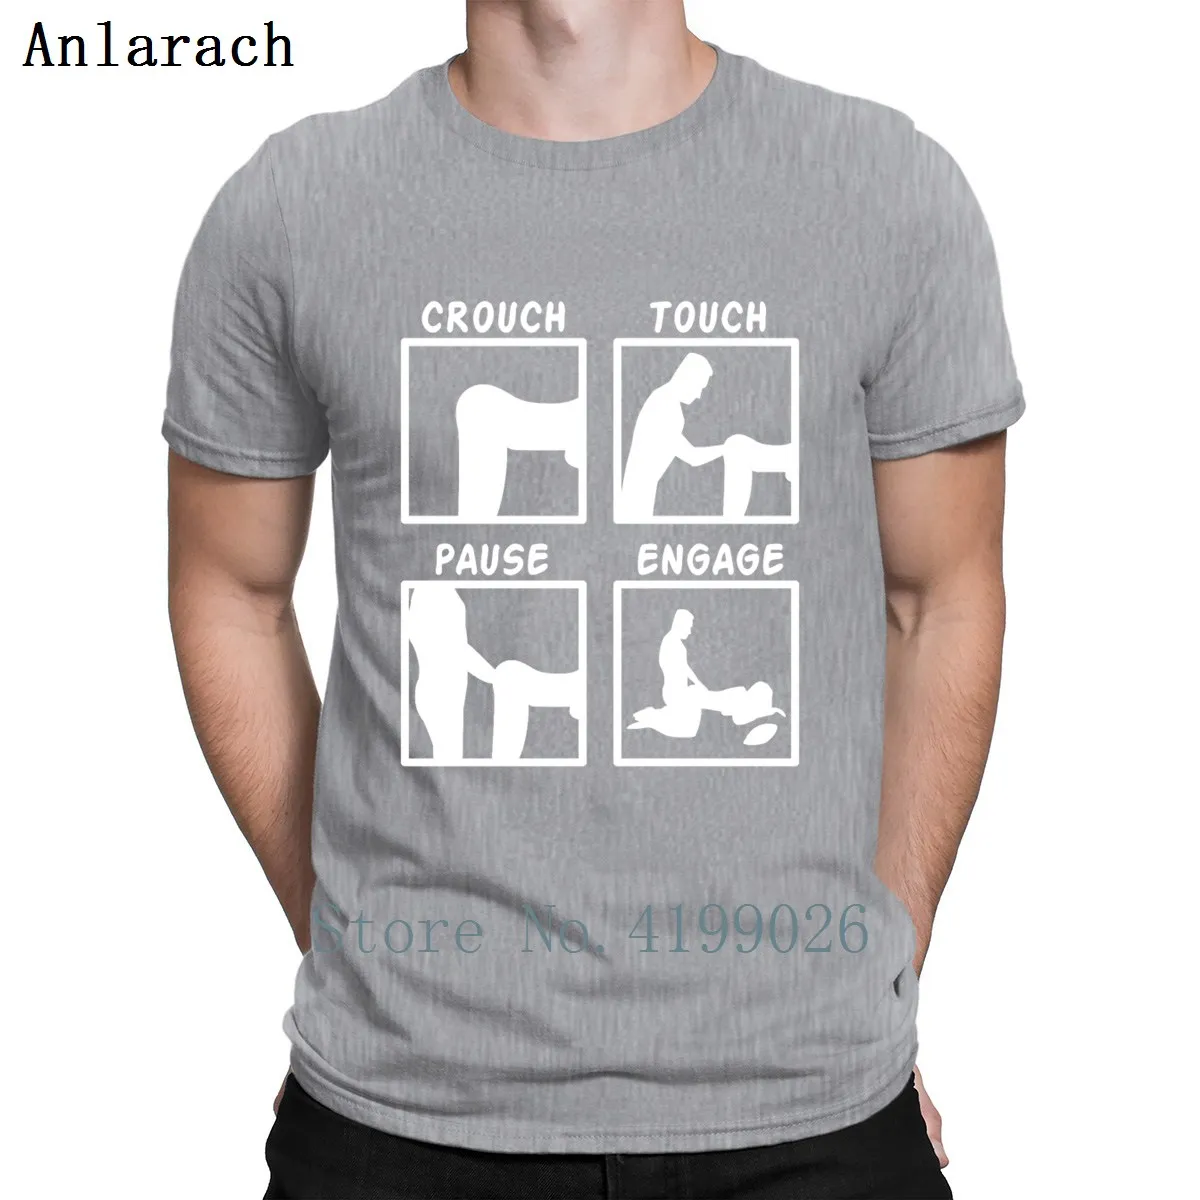 Футболка с надписью «It's A Pause», «crauch», «tause», «Pause», хлопковая летняя футболка с рисунком S-5xl, дизайнерская футболка для инструктора по семейному сексу - Color: Gray